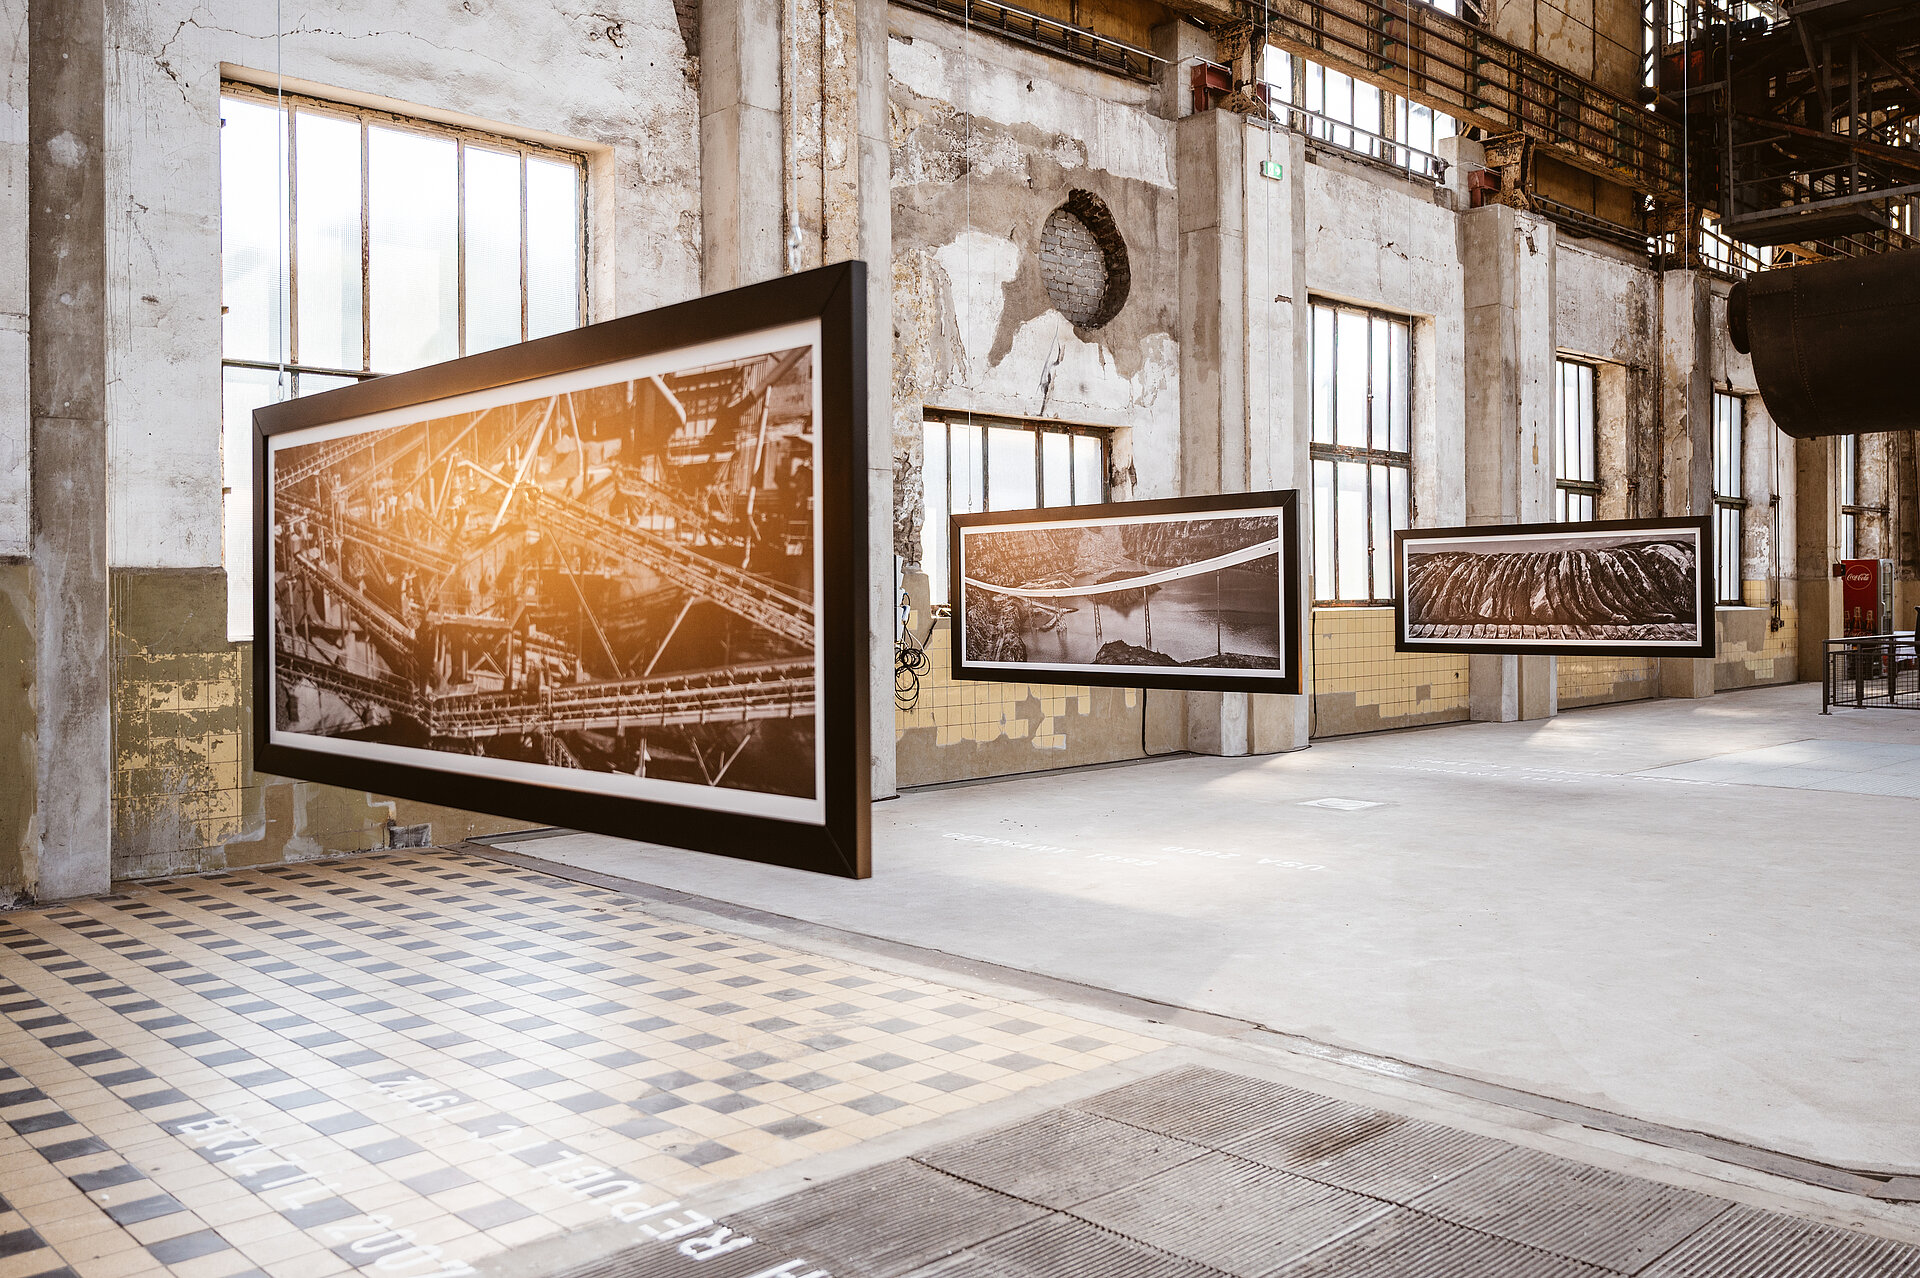 Ausstellung "Josef Koudelka. Industries" (2020/2021) im historischen Gebläsehaus.